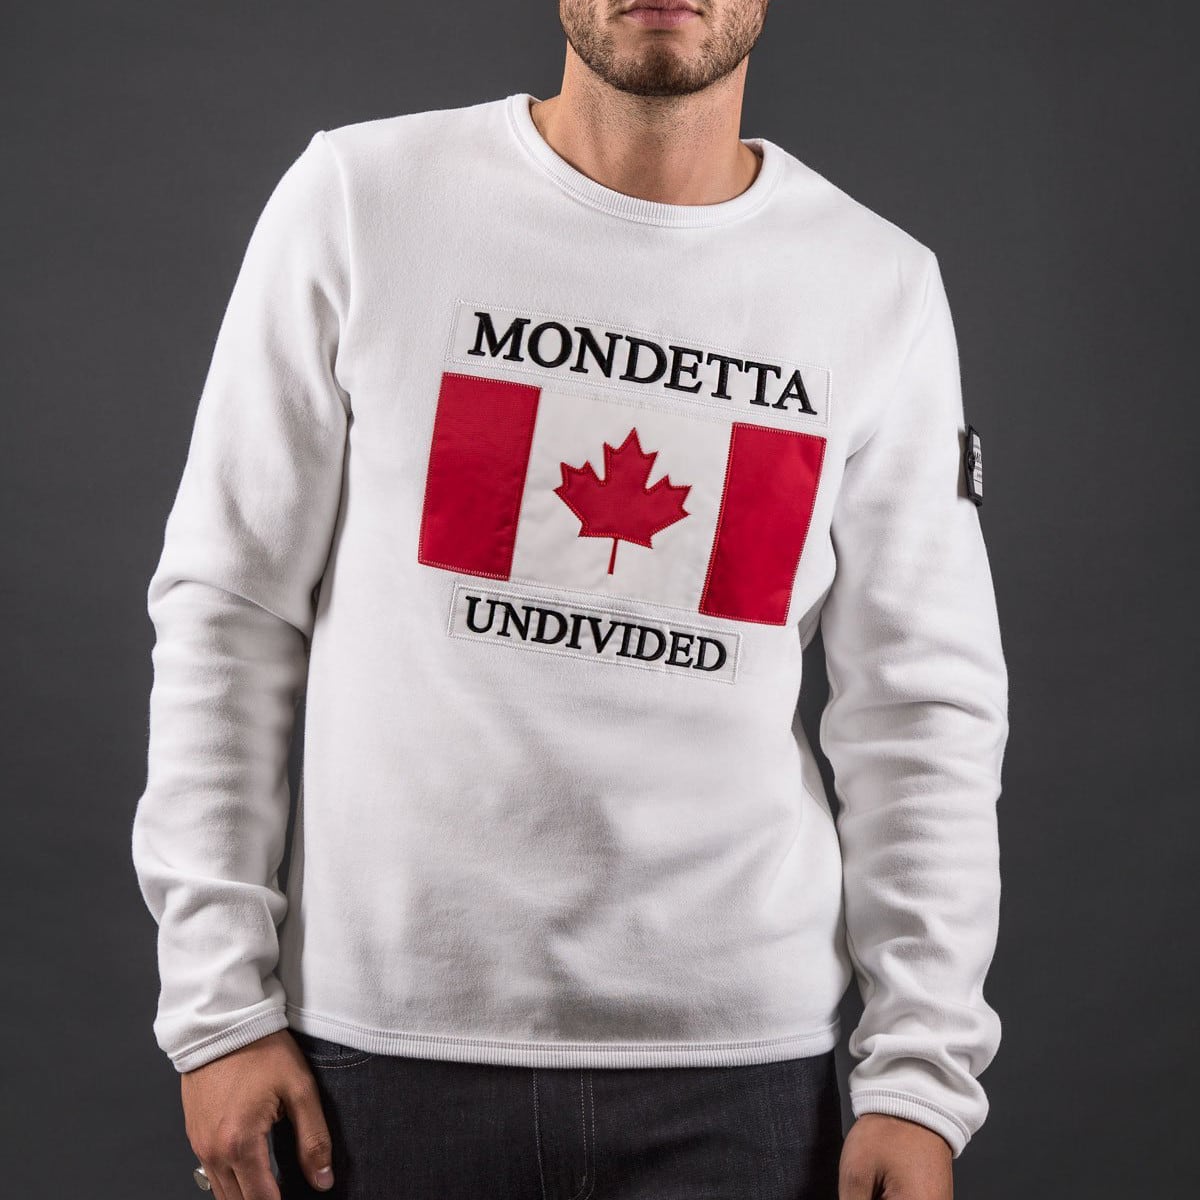 Mondetta Clothing for Men